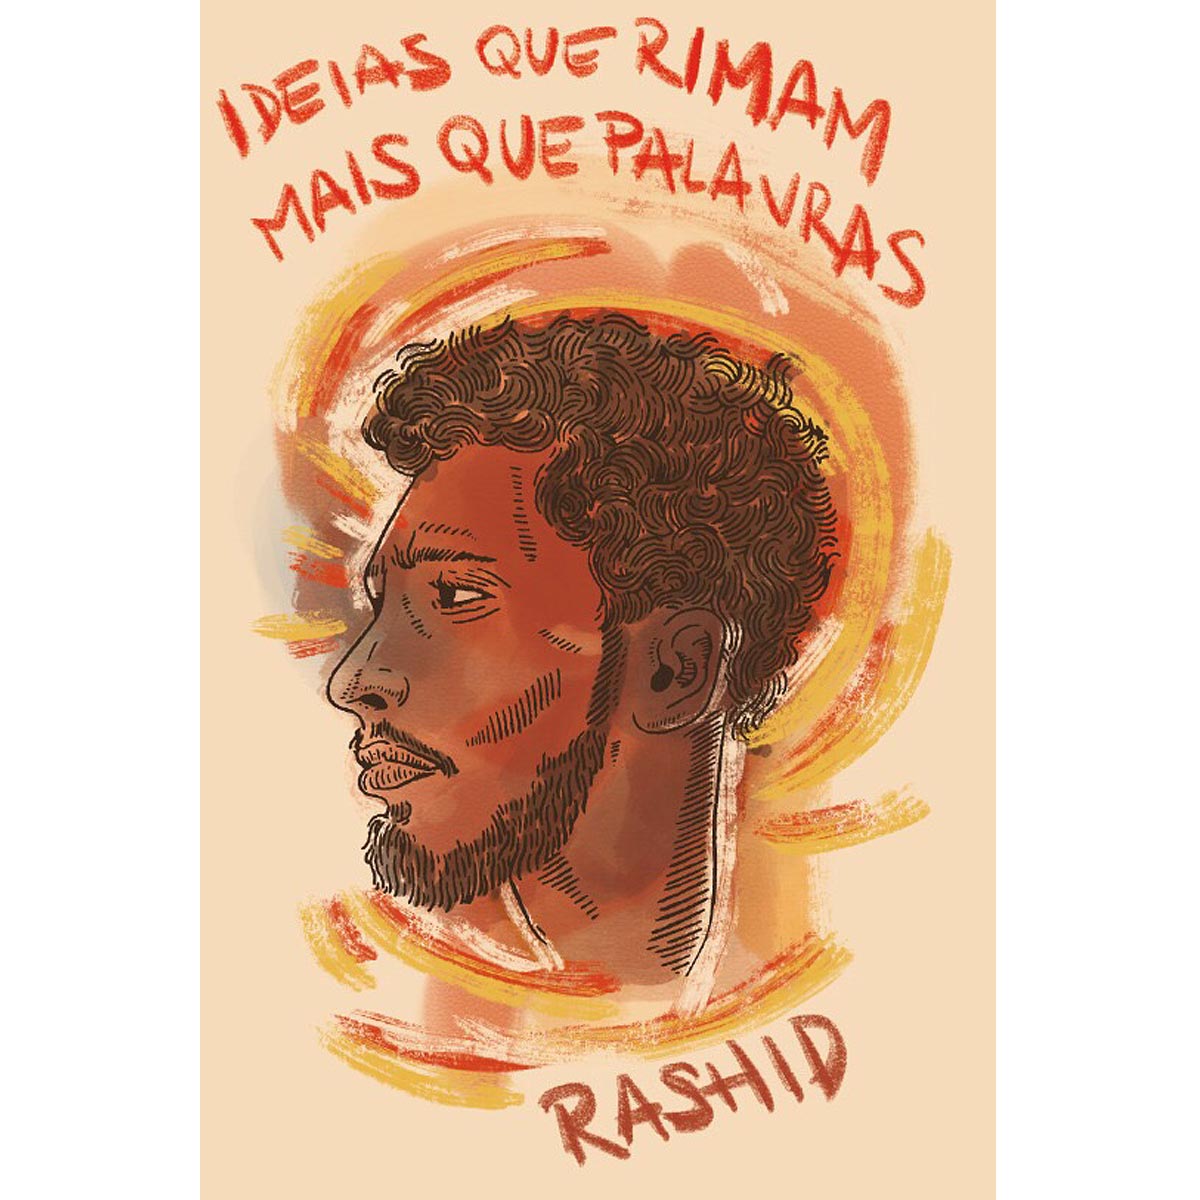 Ideias que rimam mais que palavras - Rashid